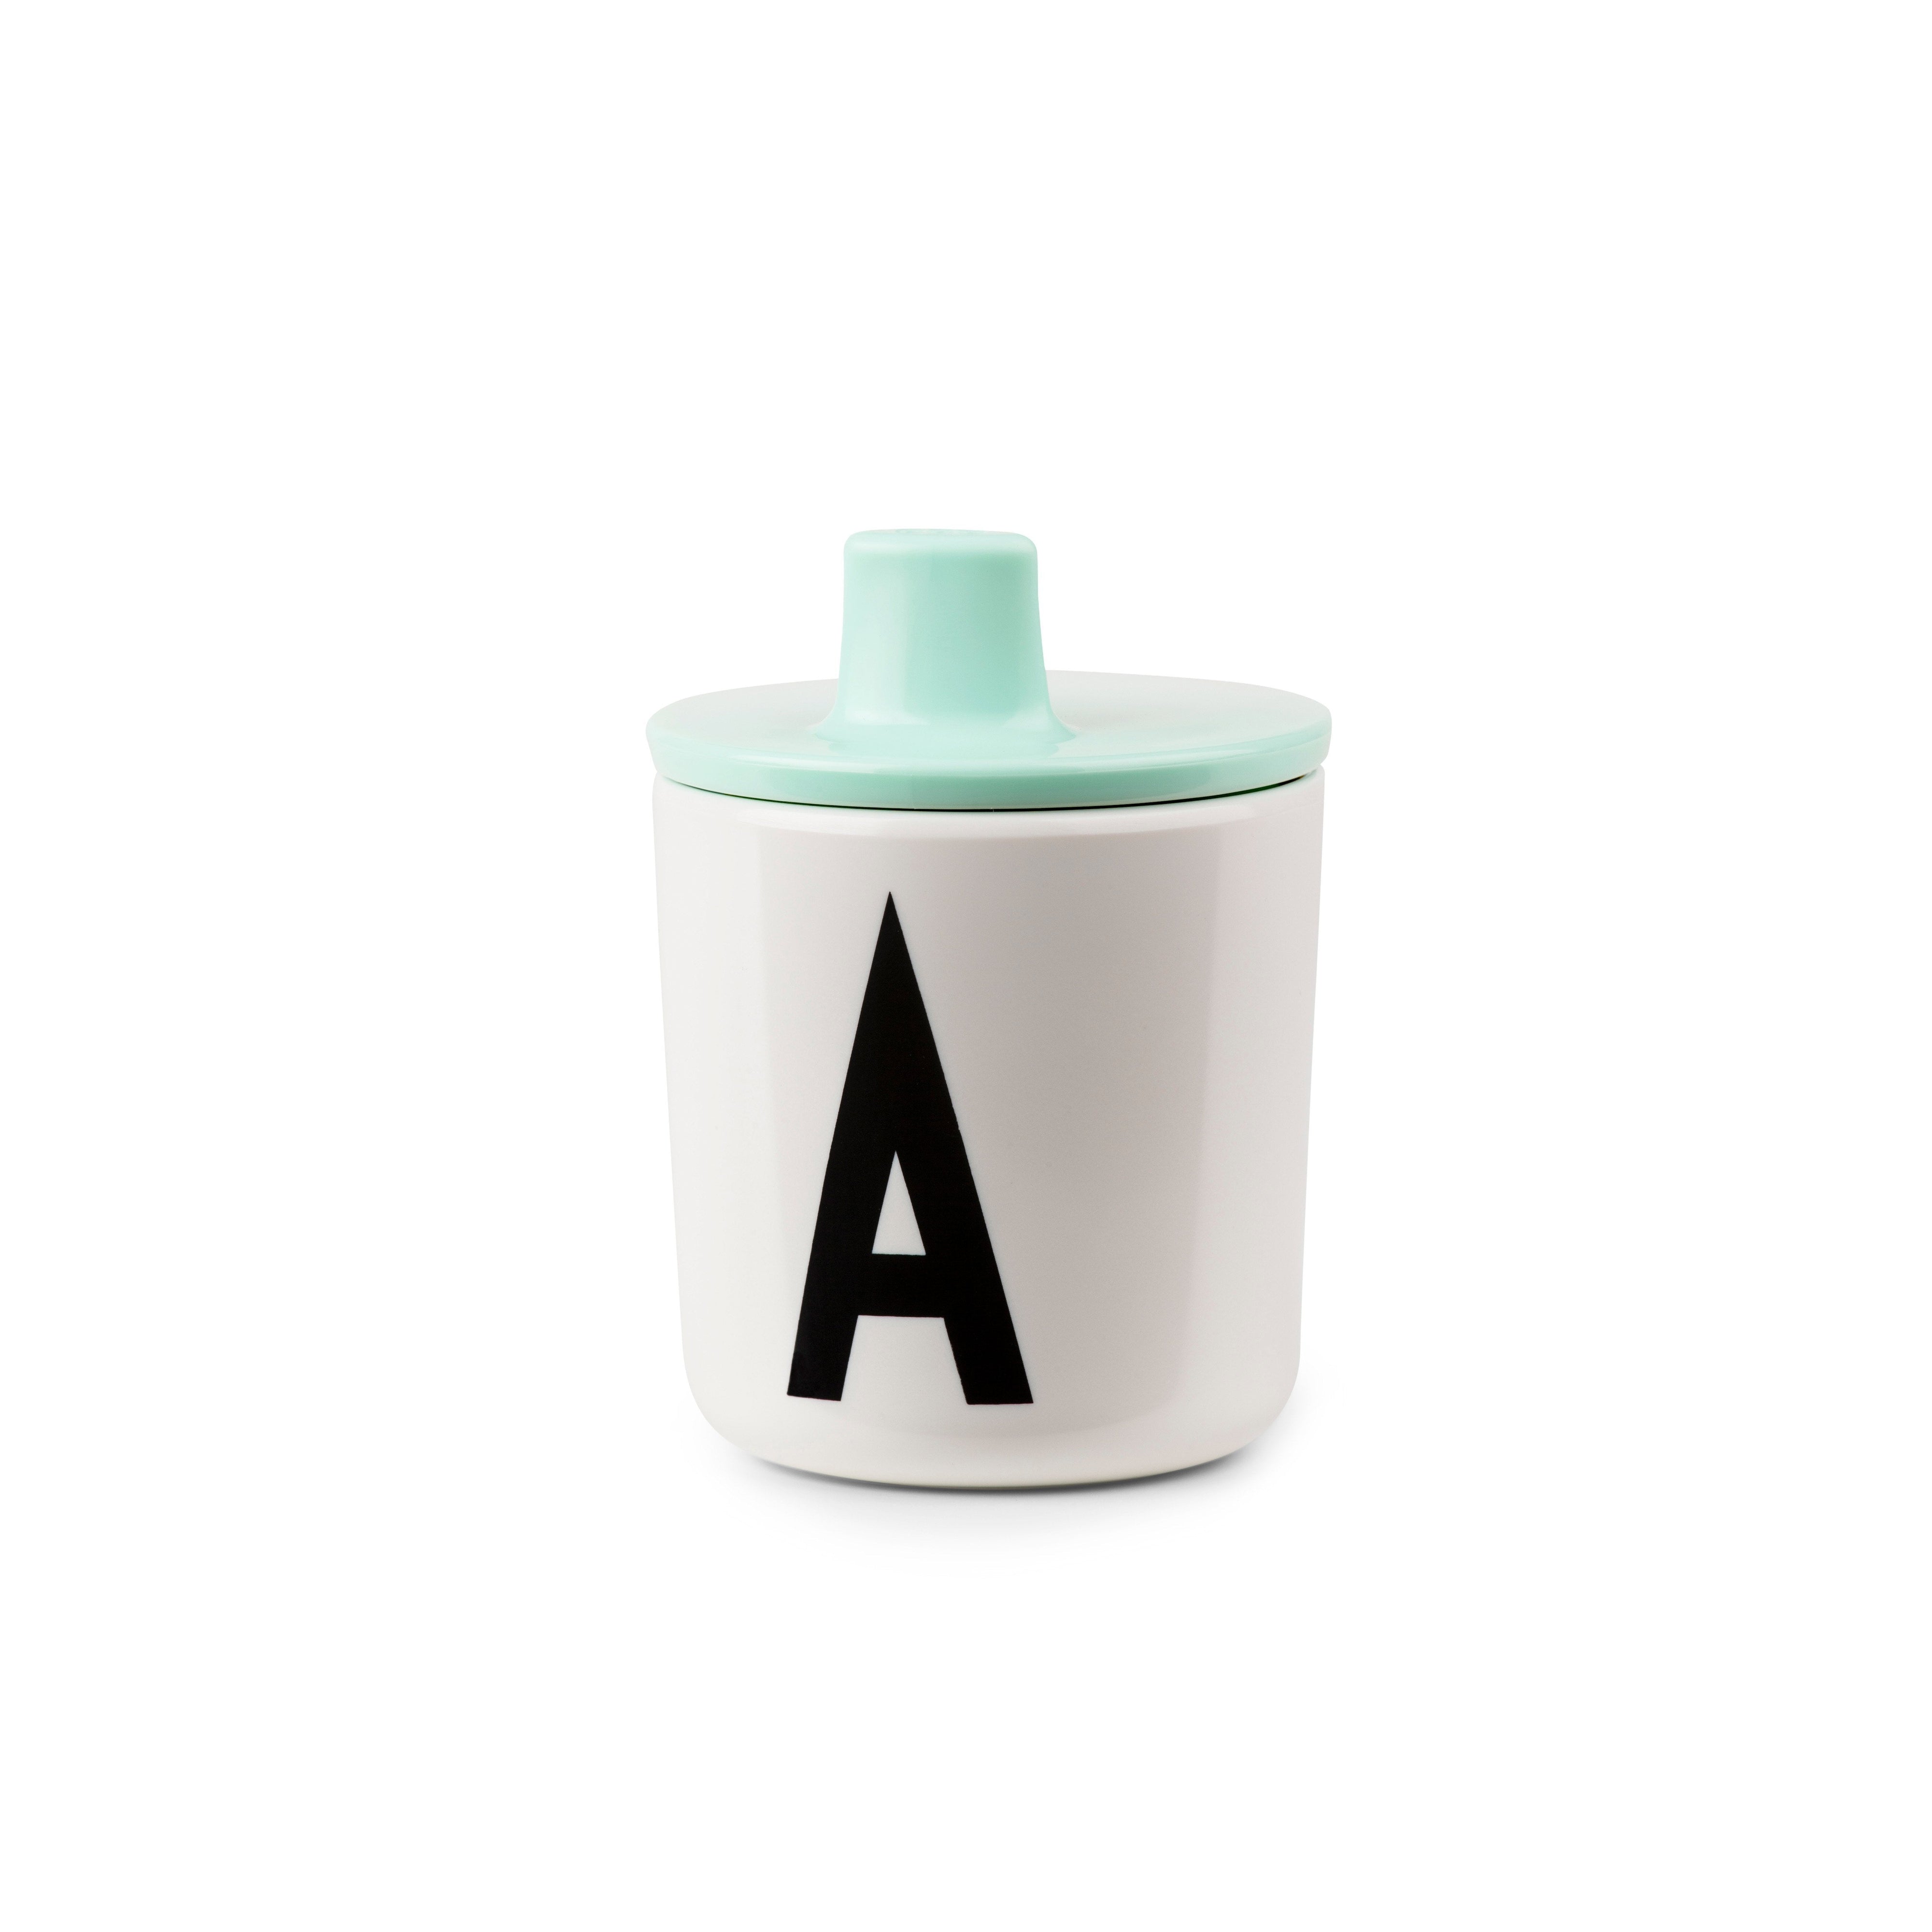 Lettere di progettazione che bevono coperchio per tazze di melamina ABC, verde menta